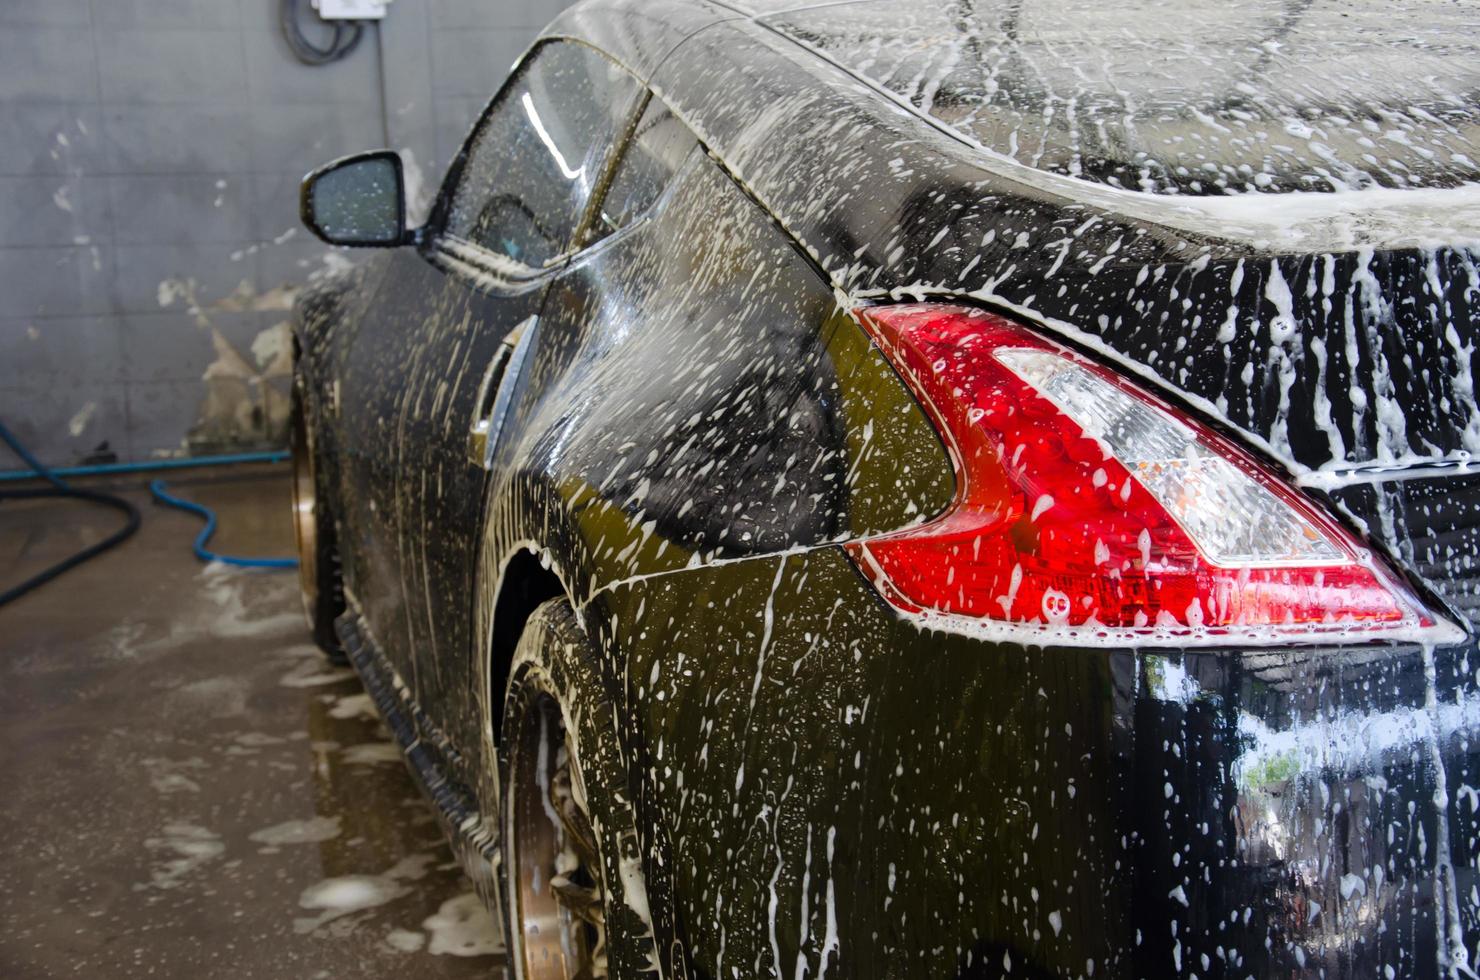 espuma de lavagem de carro foto